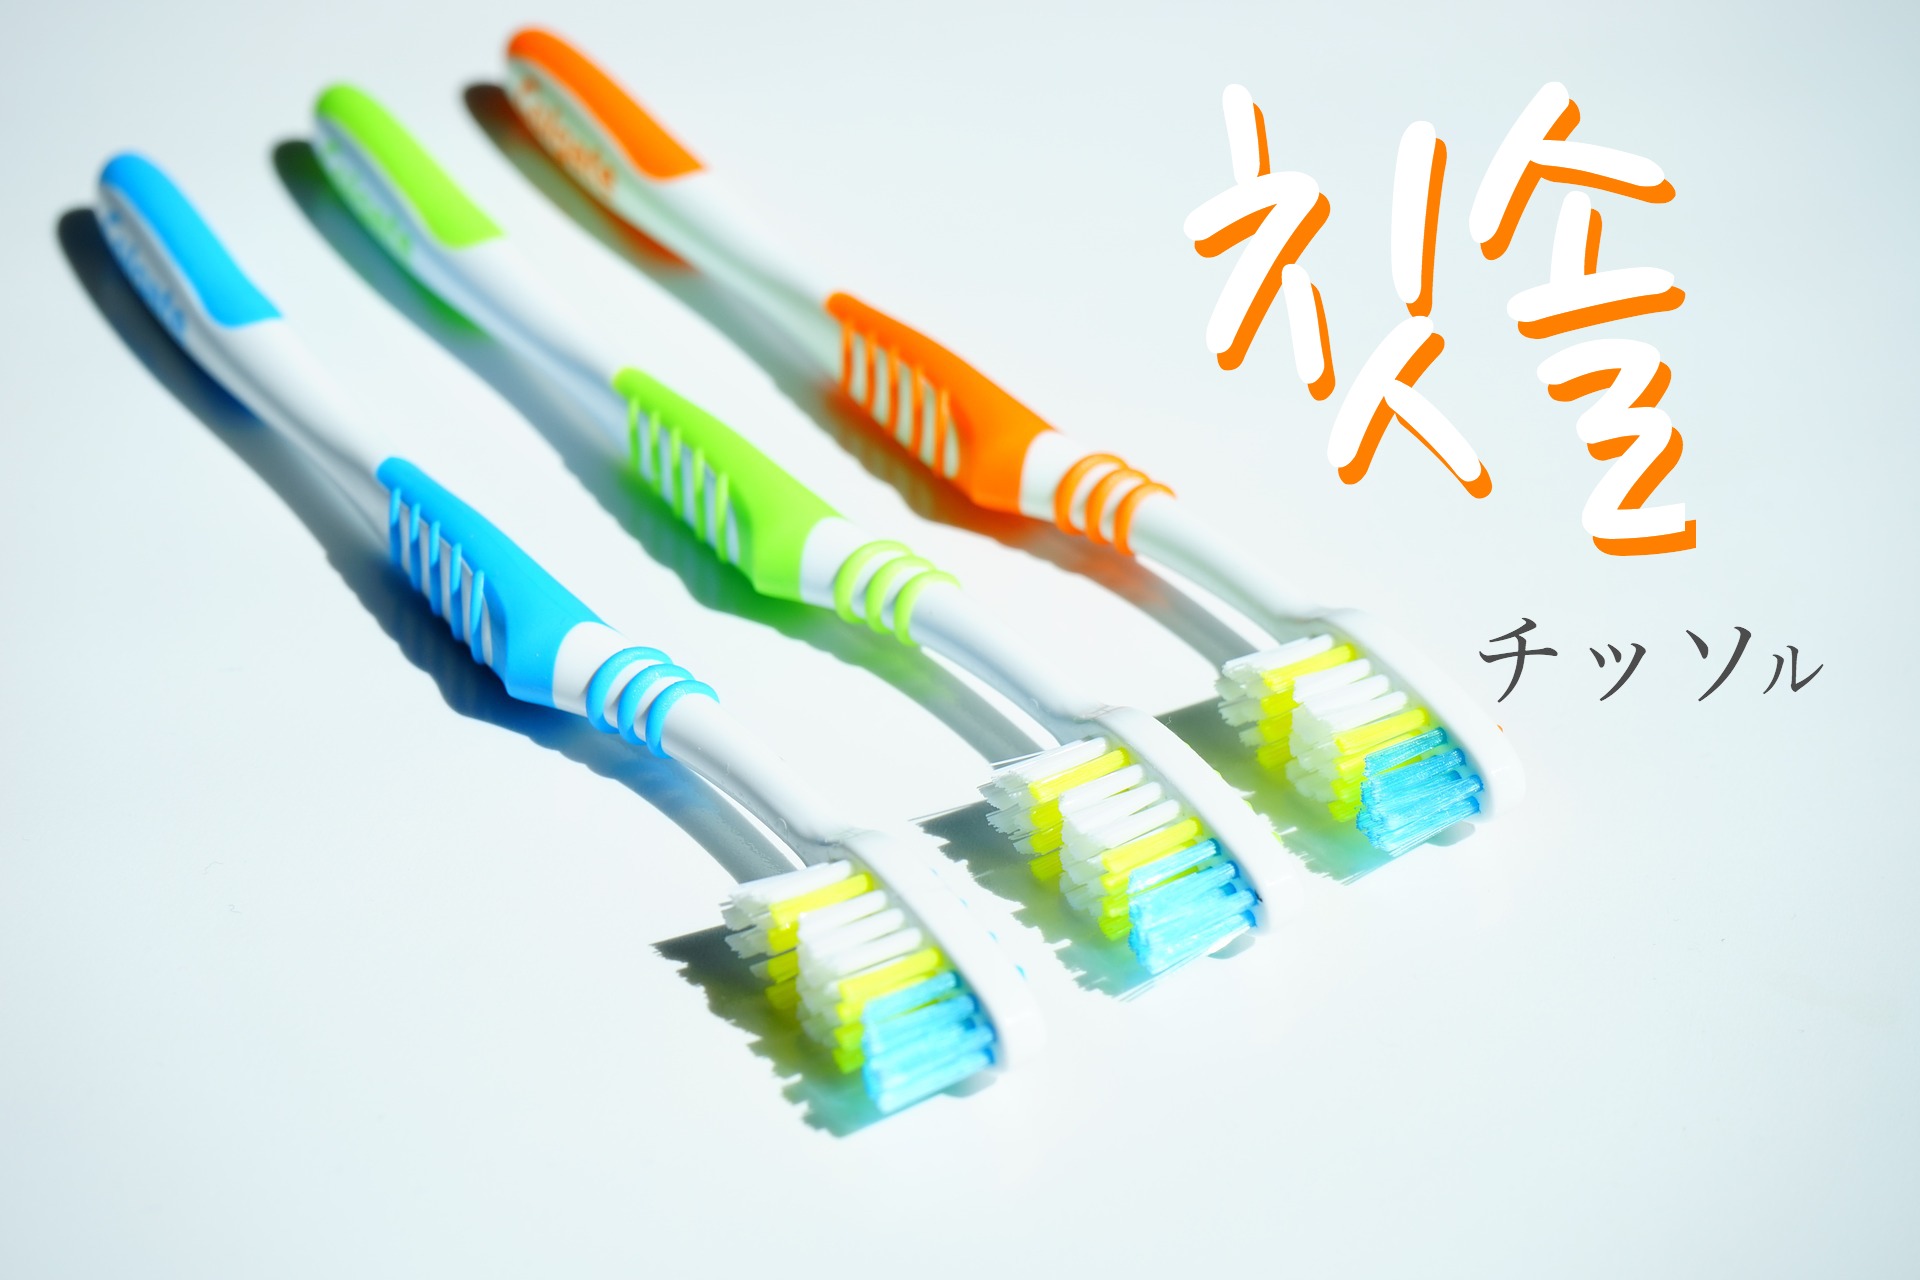 koreanword-toothbrush